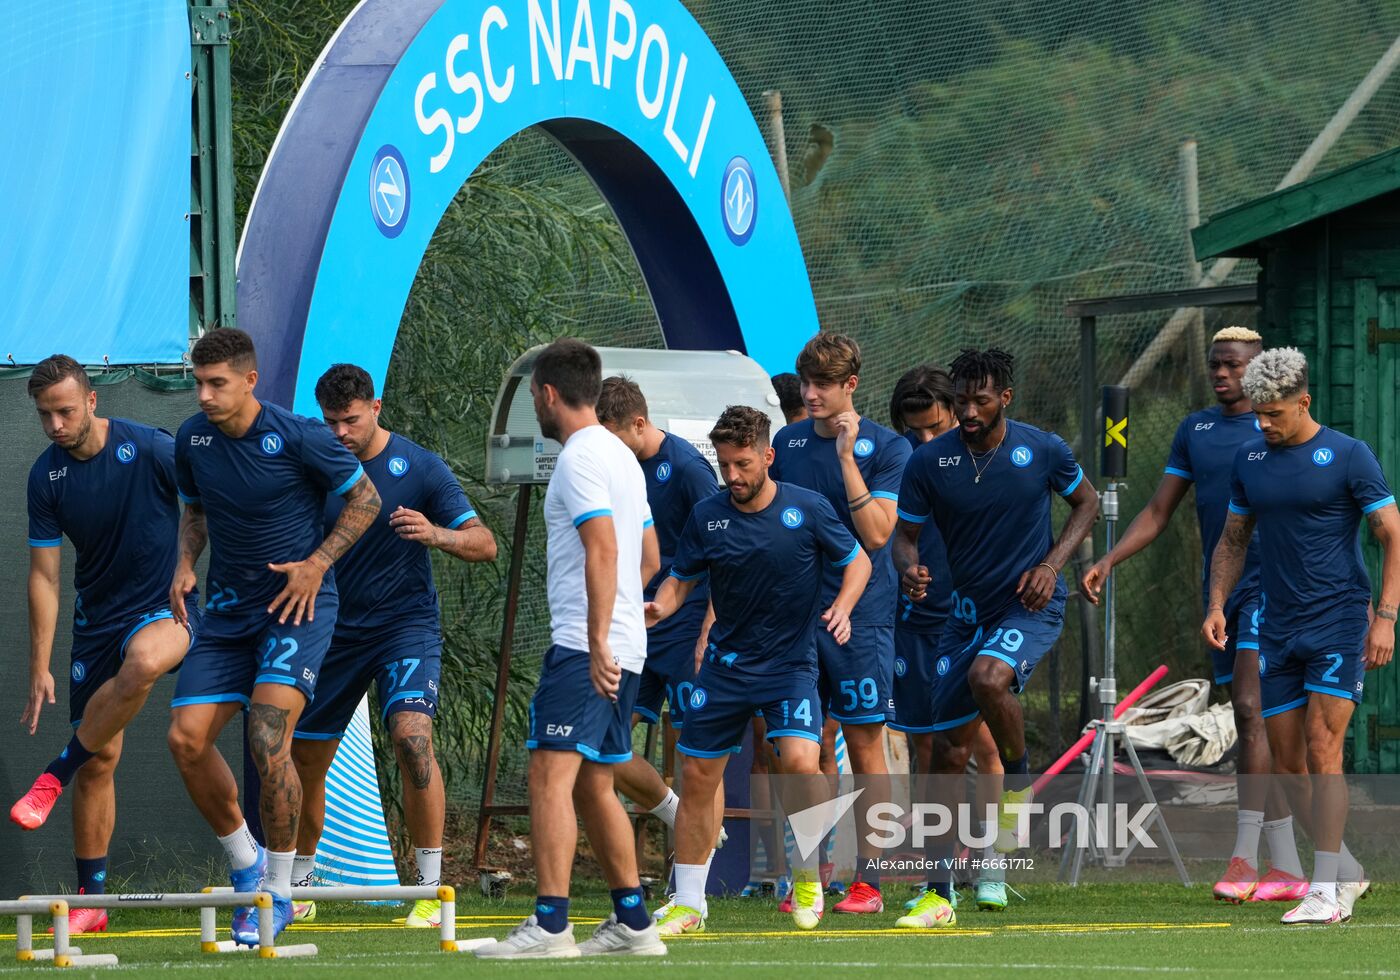 Italy Soccer Europa League Napoli Training